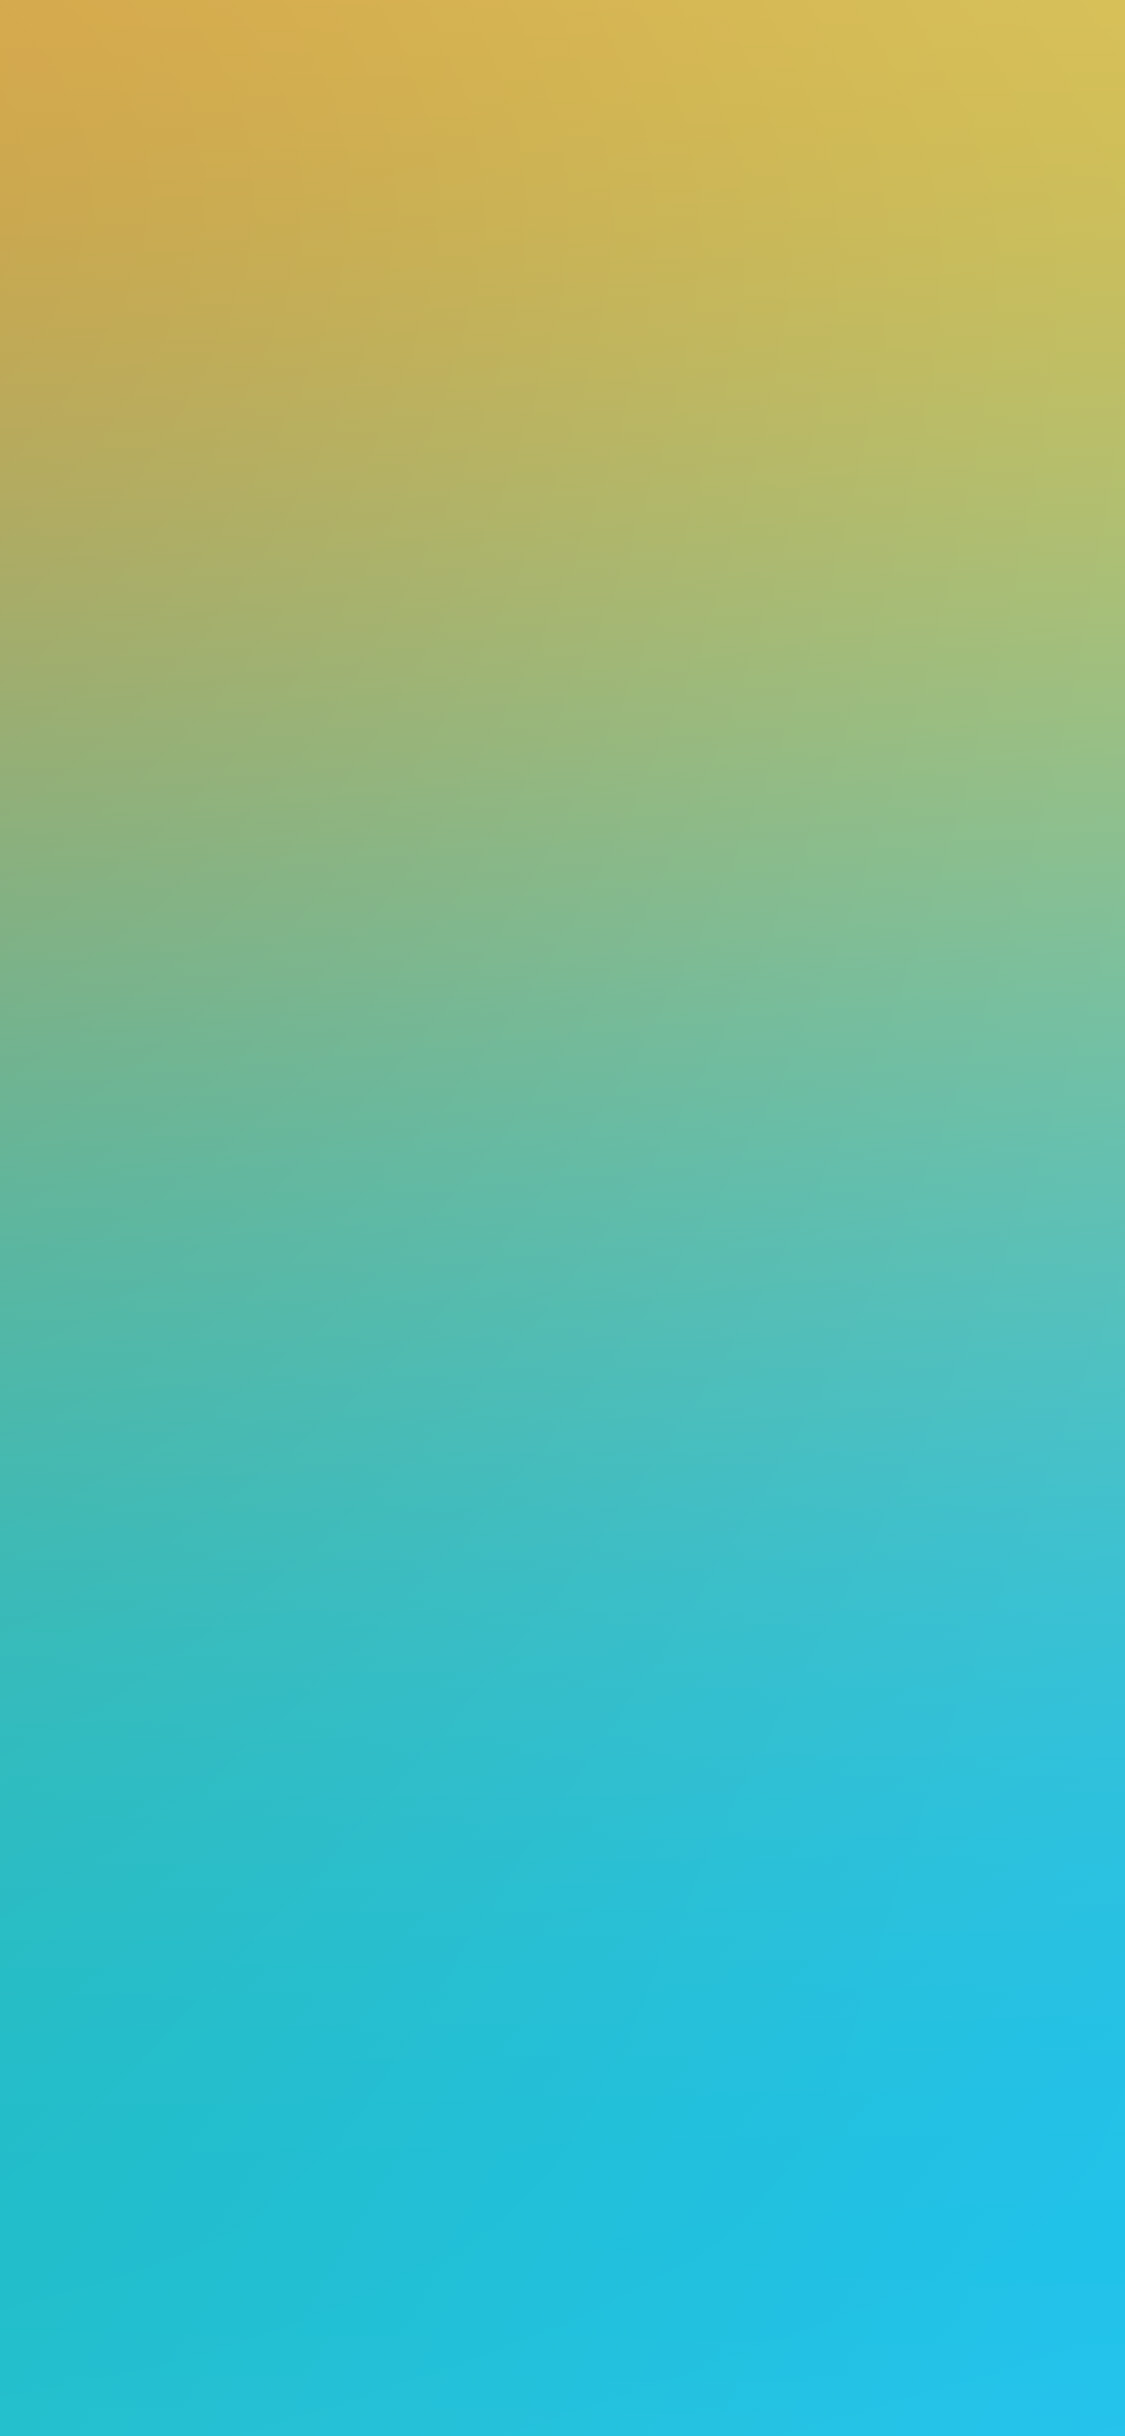 iPhone X wallpaper. yellow blue sea summer blur gradation